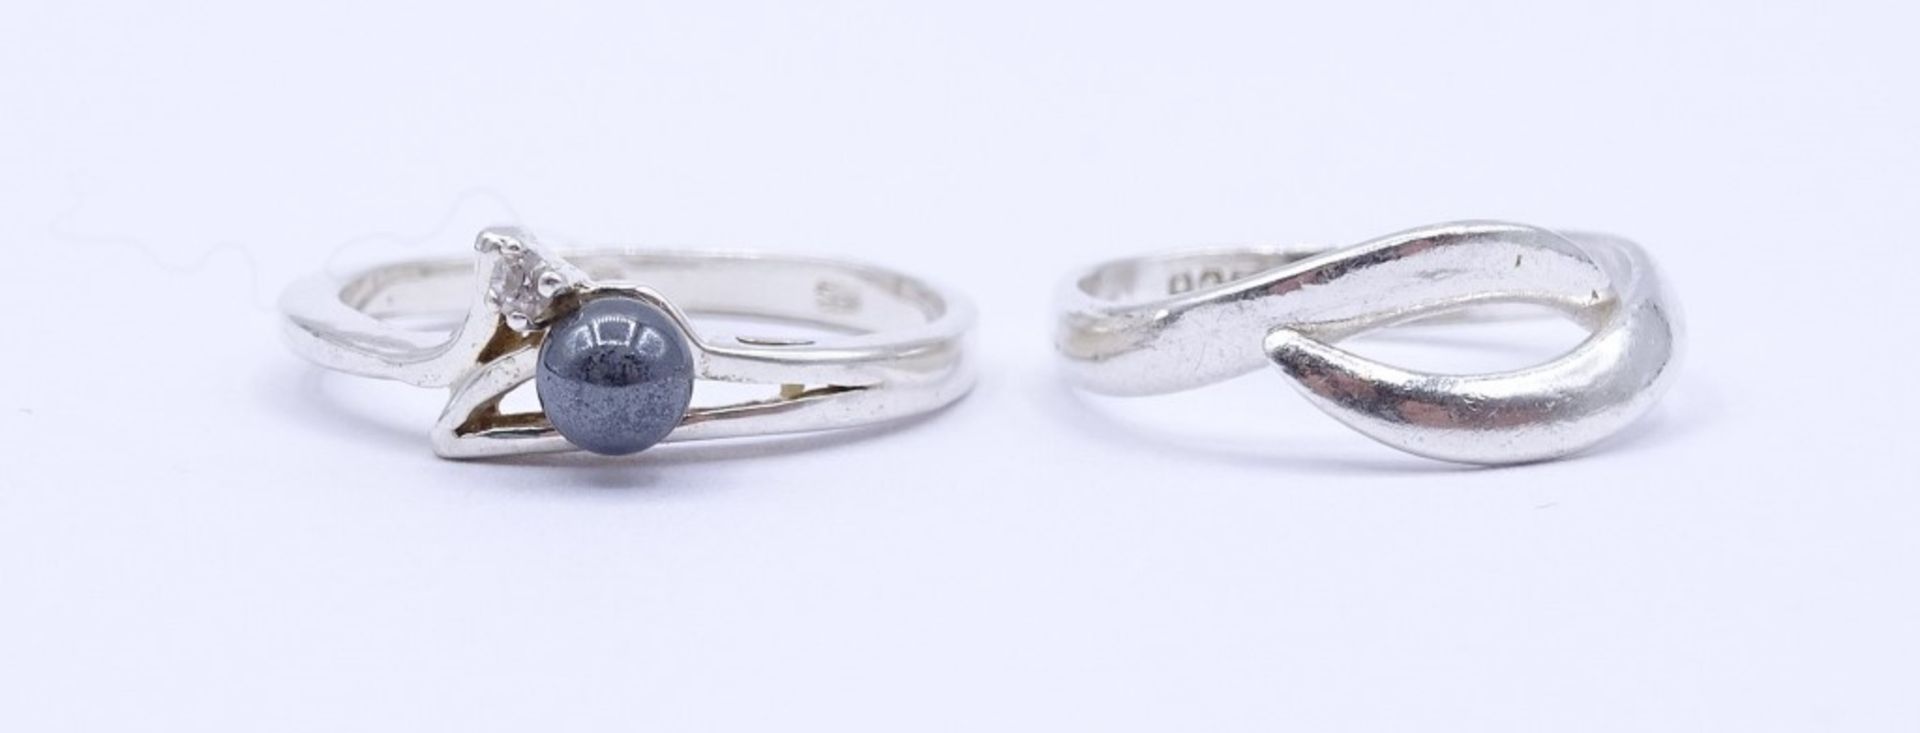 2 Silber Ringe 0.925 mit Perle und einen rund facc.klaren Stein, zus. 5,2 g., RG 62 u. 57